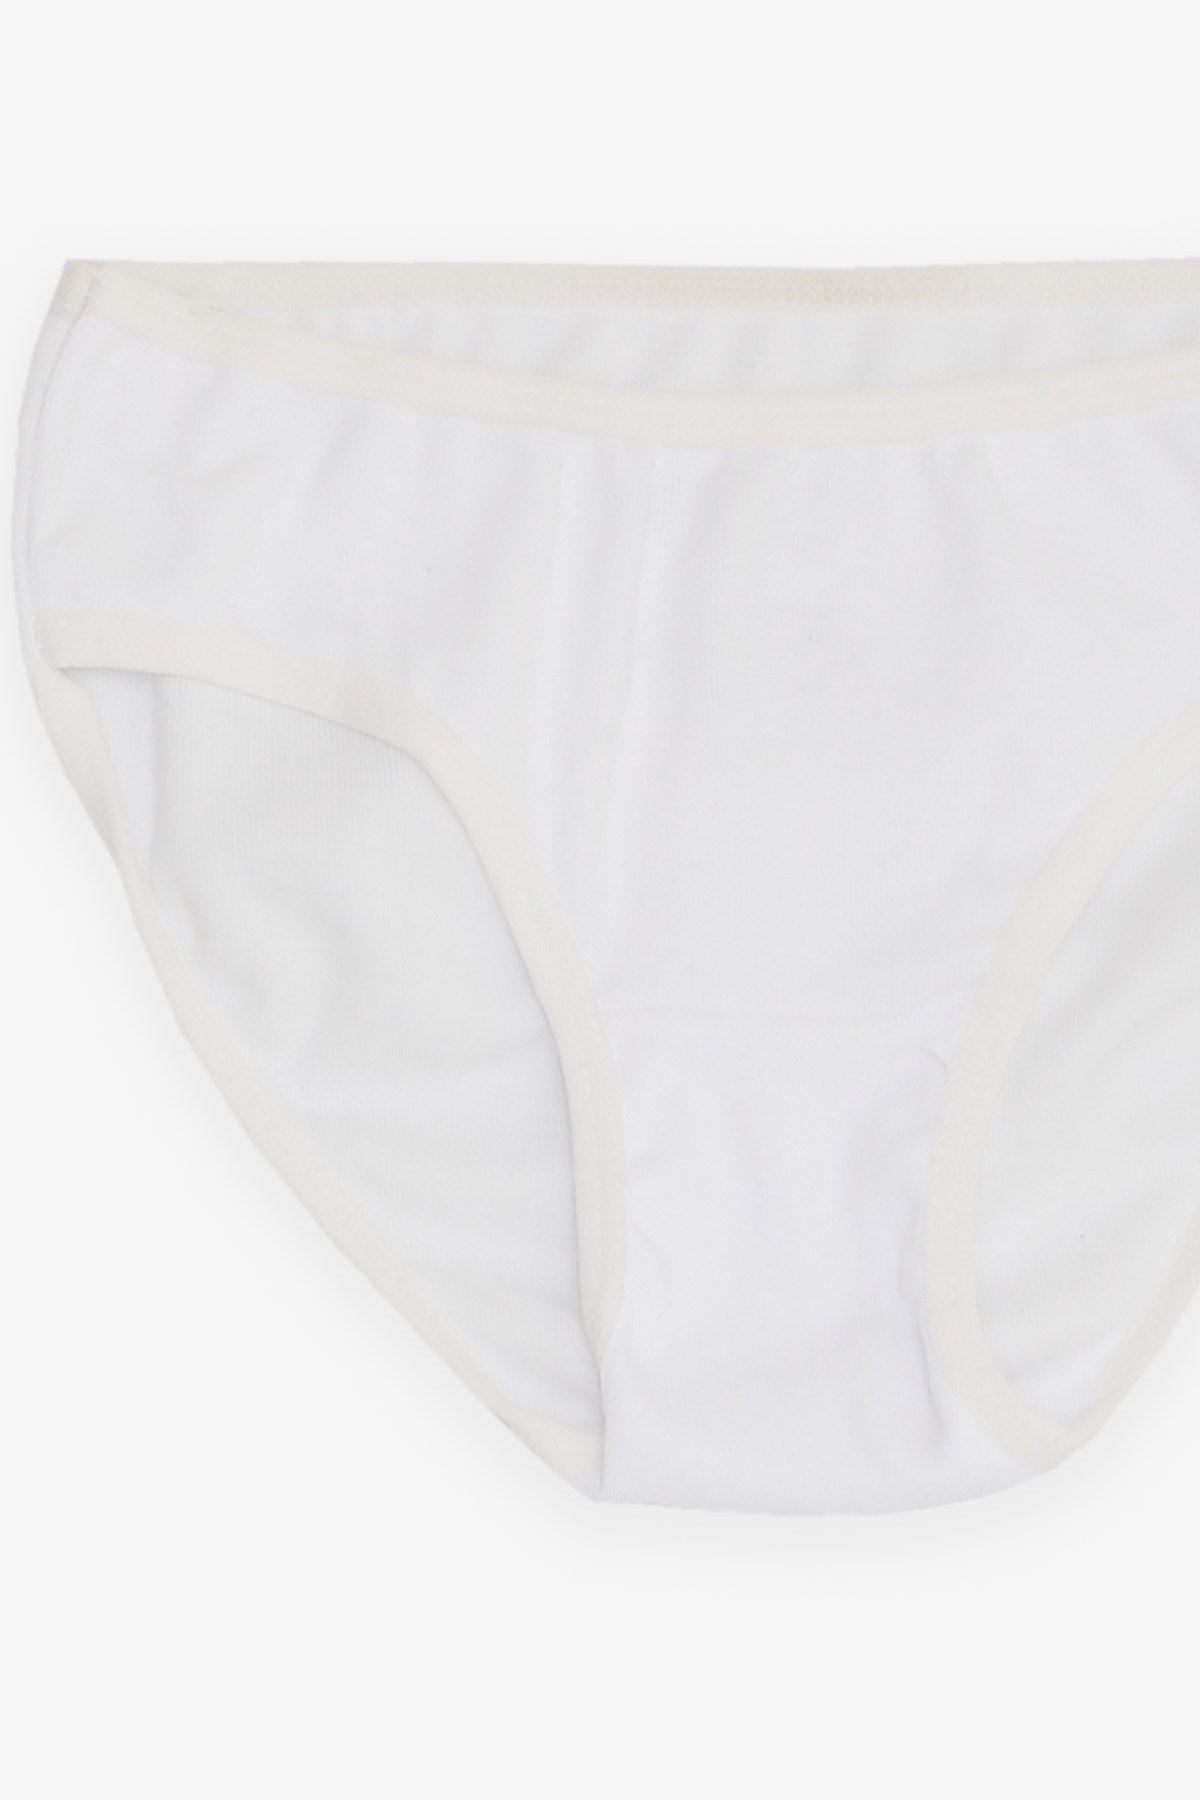 Kız Çocuk Külot İç Giyim Beyaz Beyaz 3-11 Yaş - Pamuklu İç Giyim | Breeze